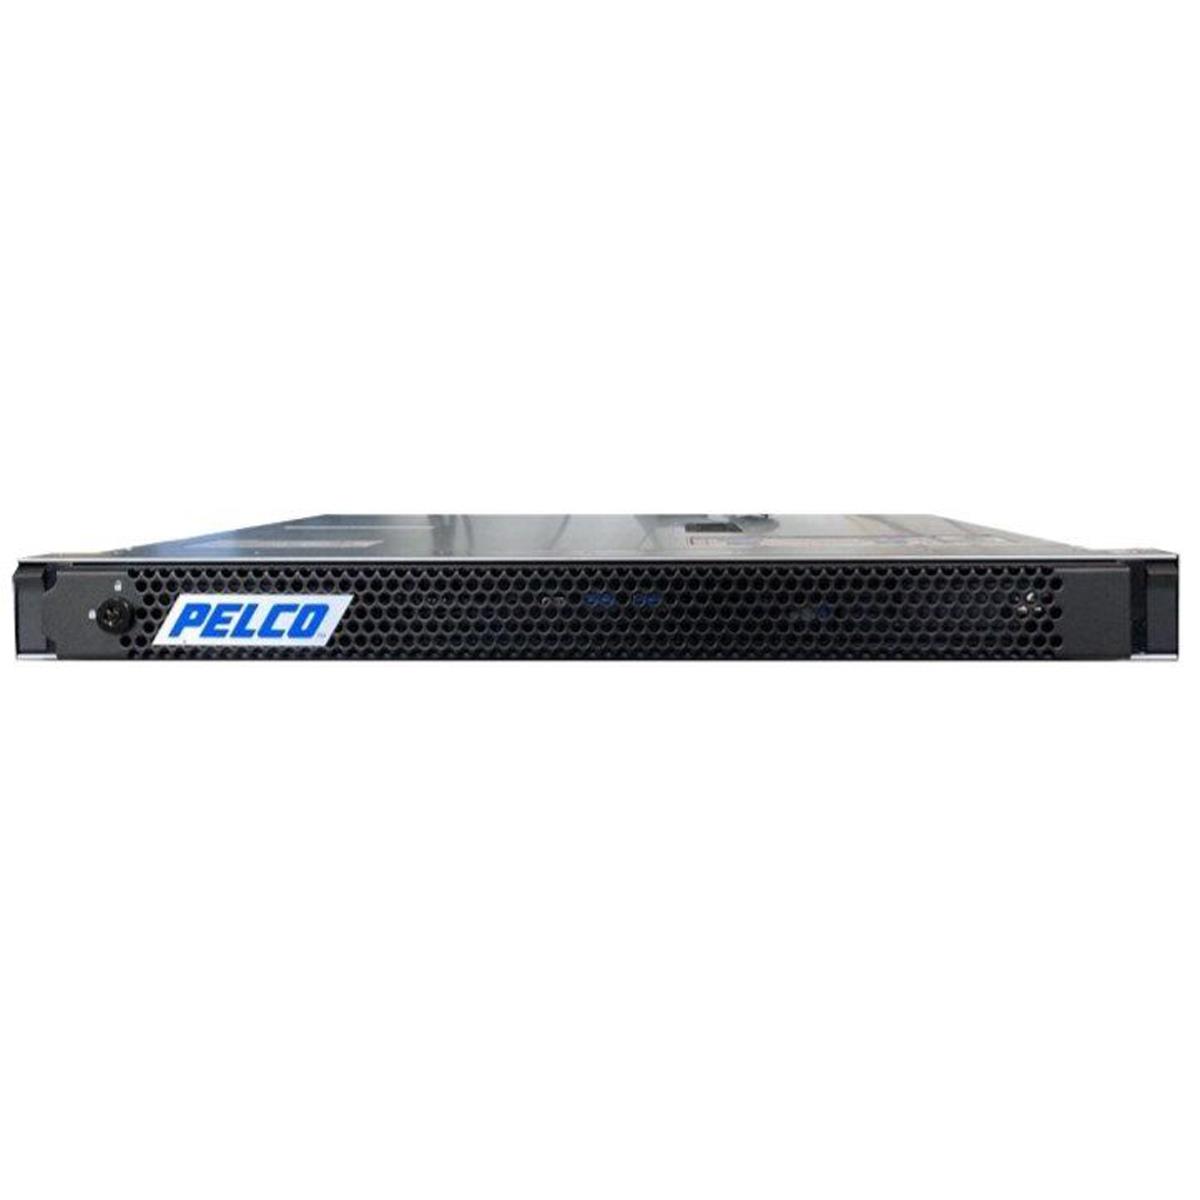 Pelco VideoXpert Professional Eco 3 Server - 4TB HDD -  VXP-E3-4-J-S